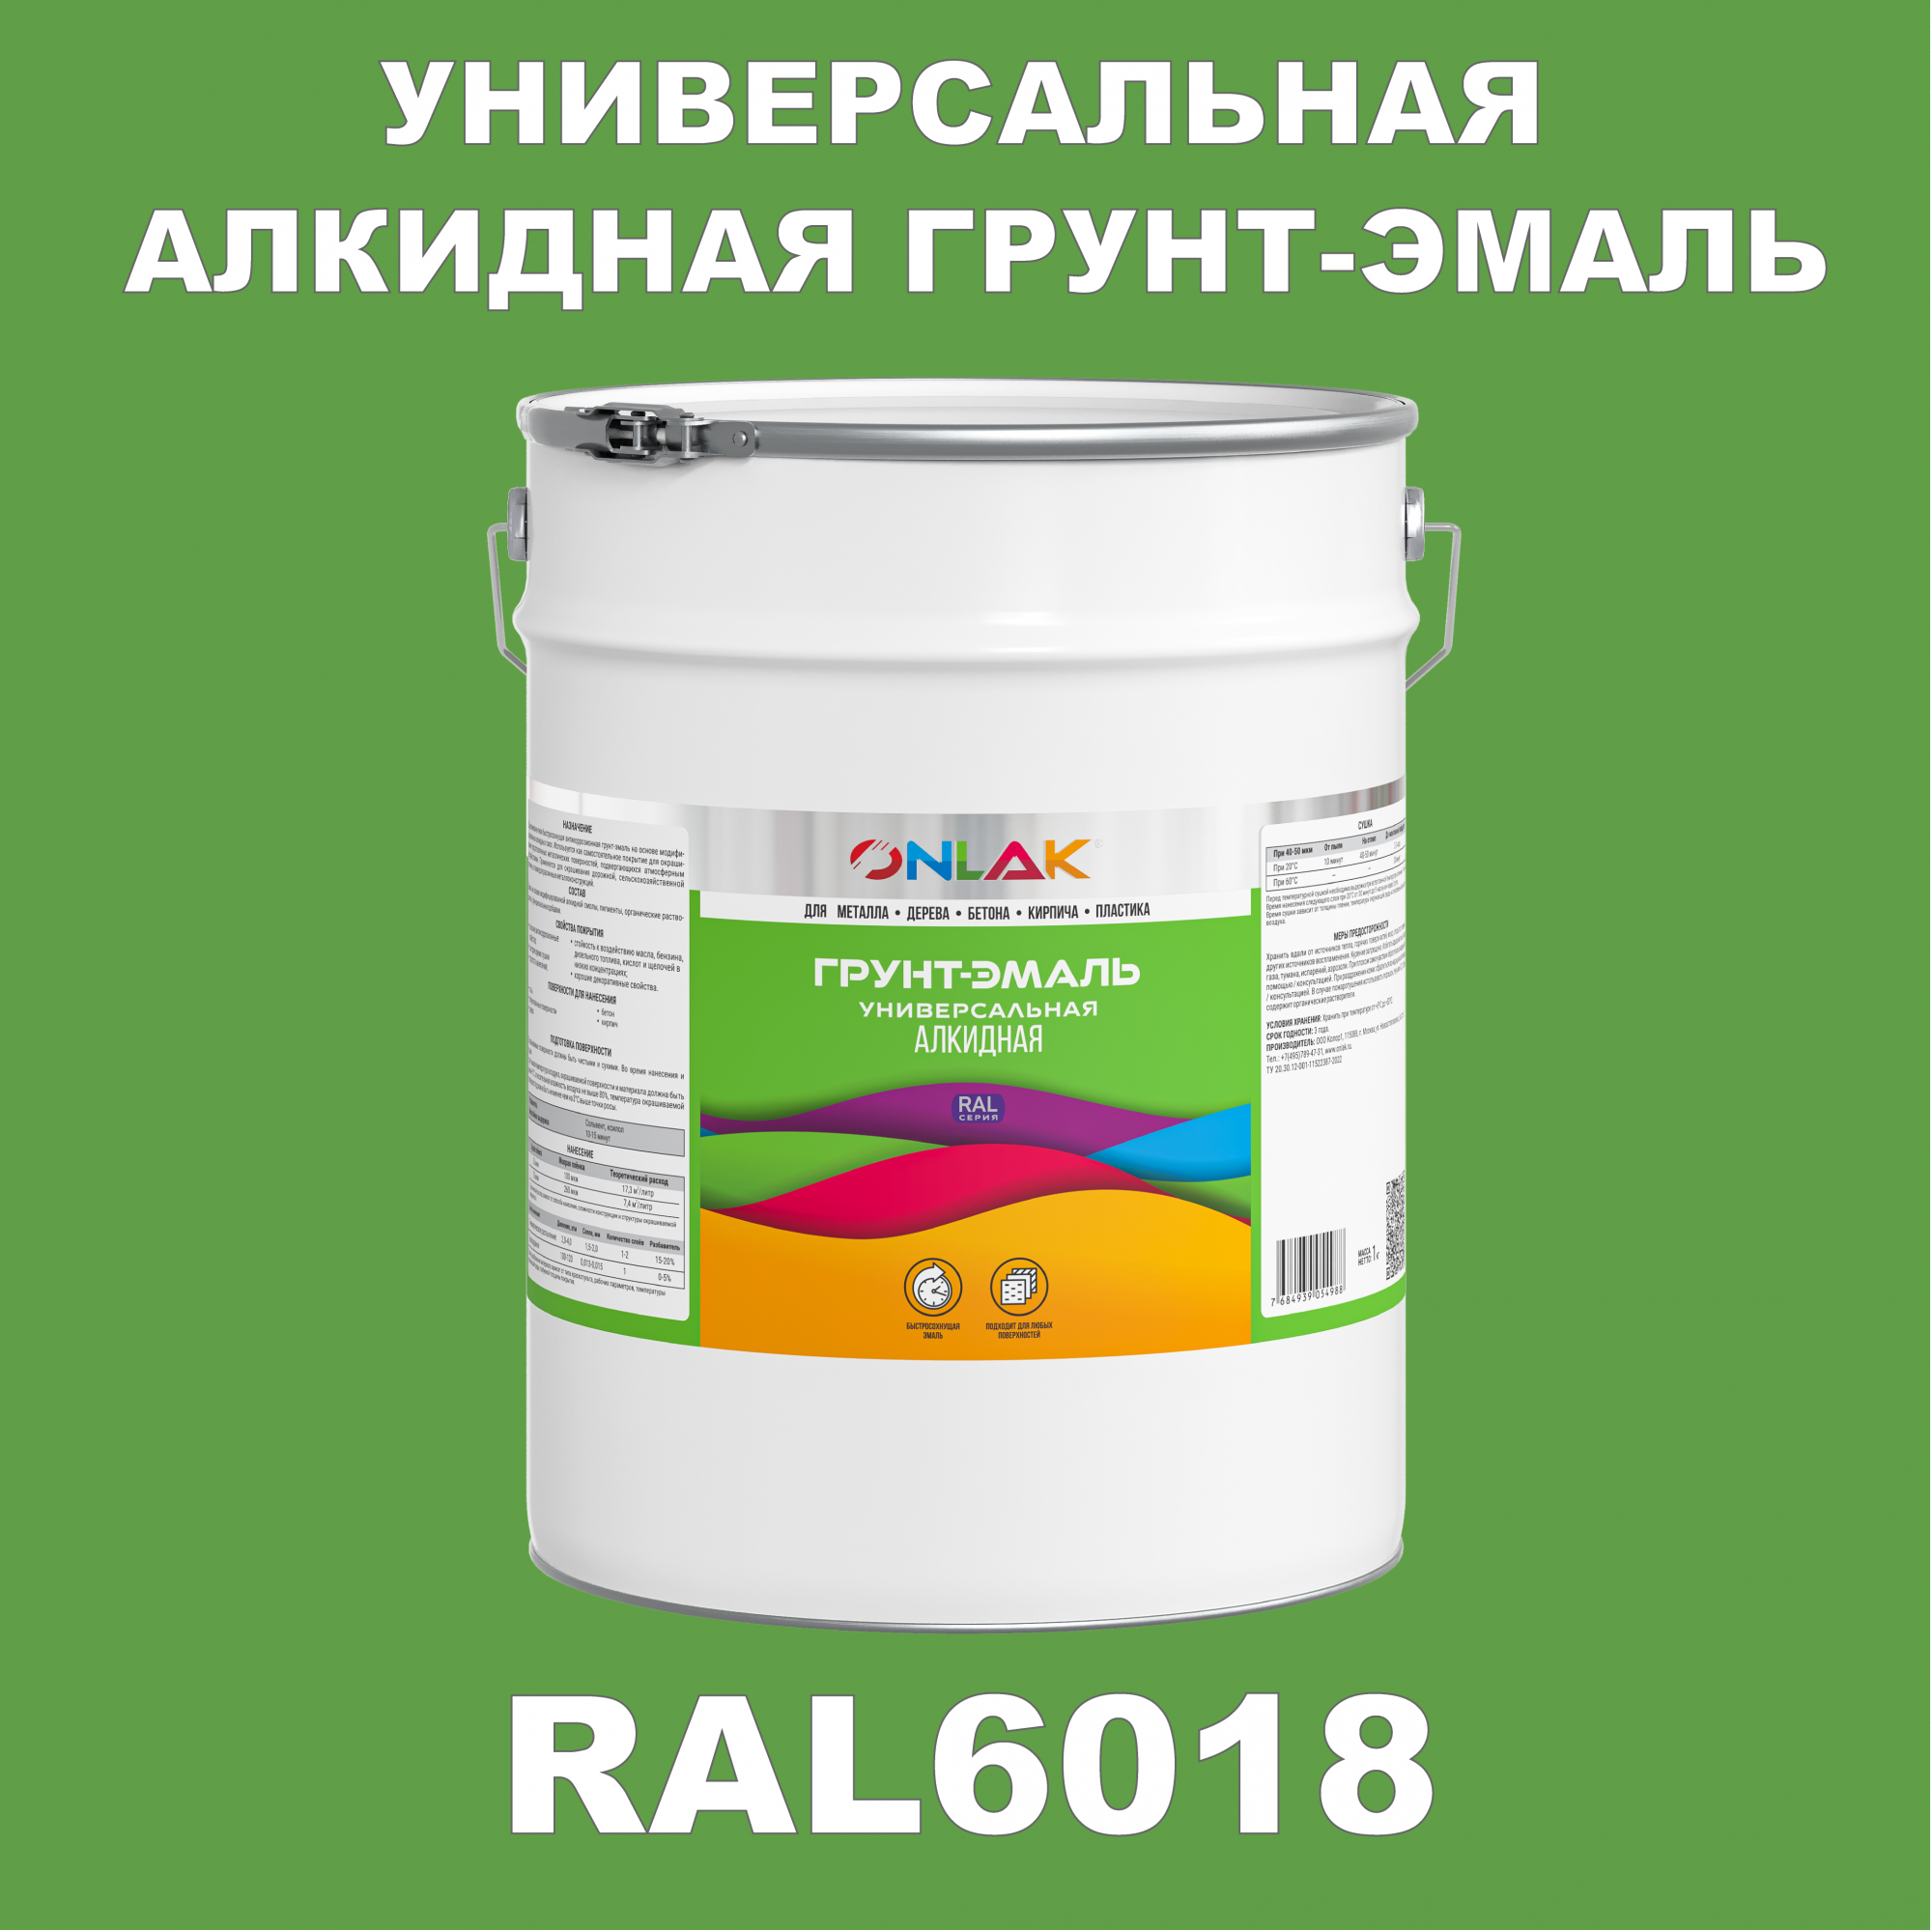 Грунт-эмаль ONLAK 1К RAL6018 антикоррозионная алкидная по металлу по ржавчине 20 кг грунт эмаль аэрозольная престиж 3в1 алкидная коричневая ral 8017 425 мл 0 425 кг